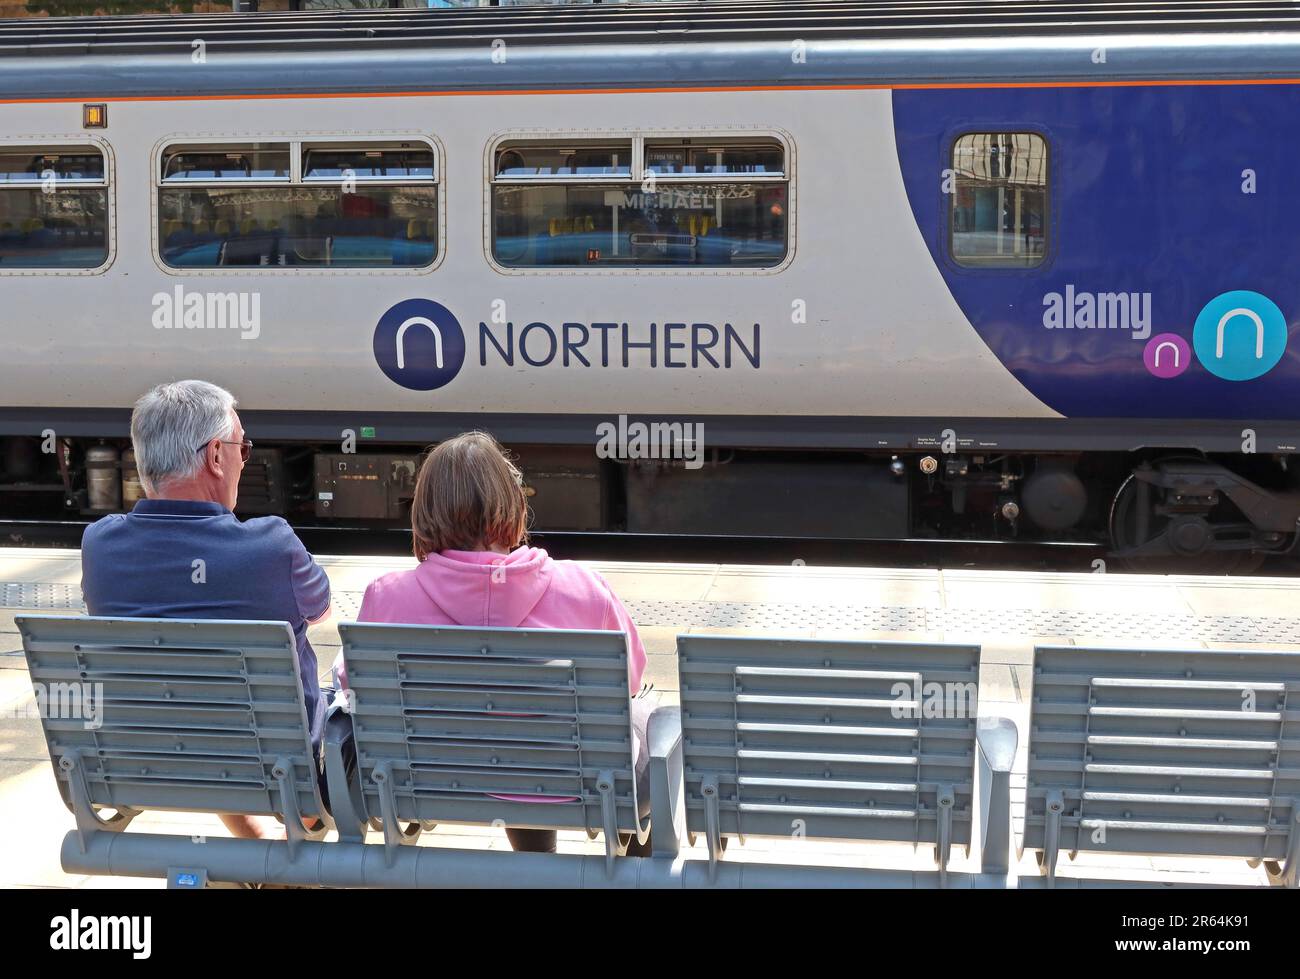 Un couple attend un train de franchise du Nord pour être préparé pour le départ, à la gare de Liverpool Lime Street, Merseyside, Angleterre, Royaume-Uni, L1 1JD Banque D'Images